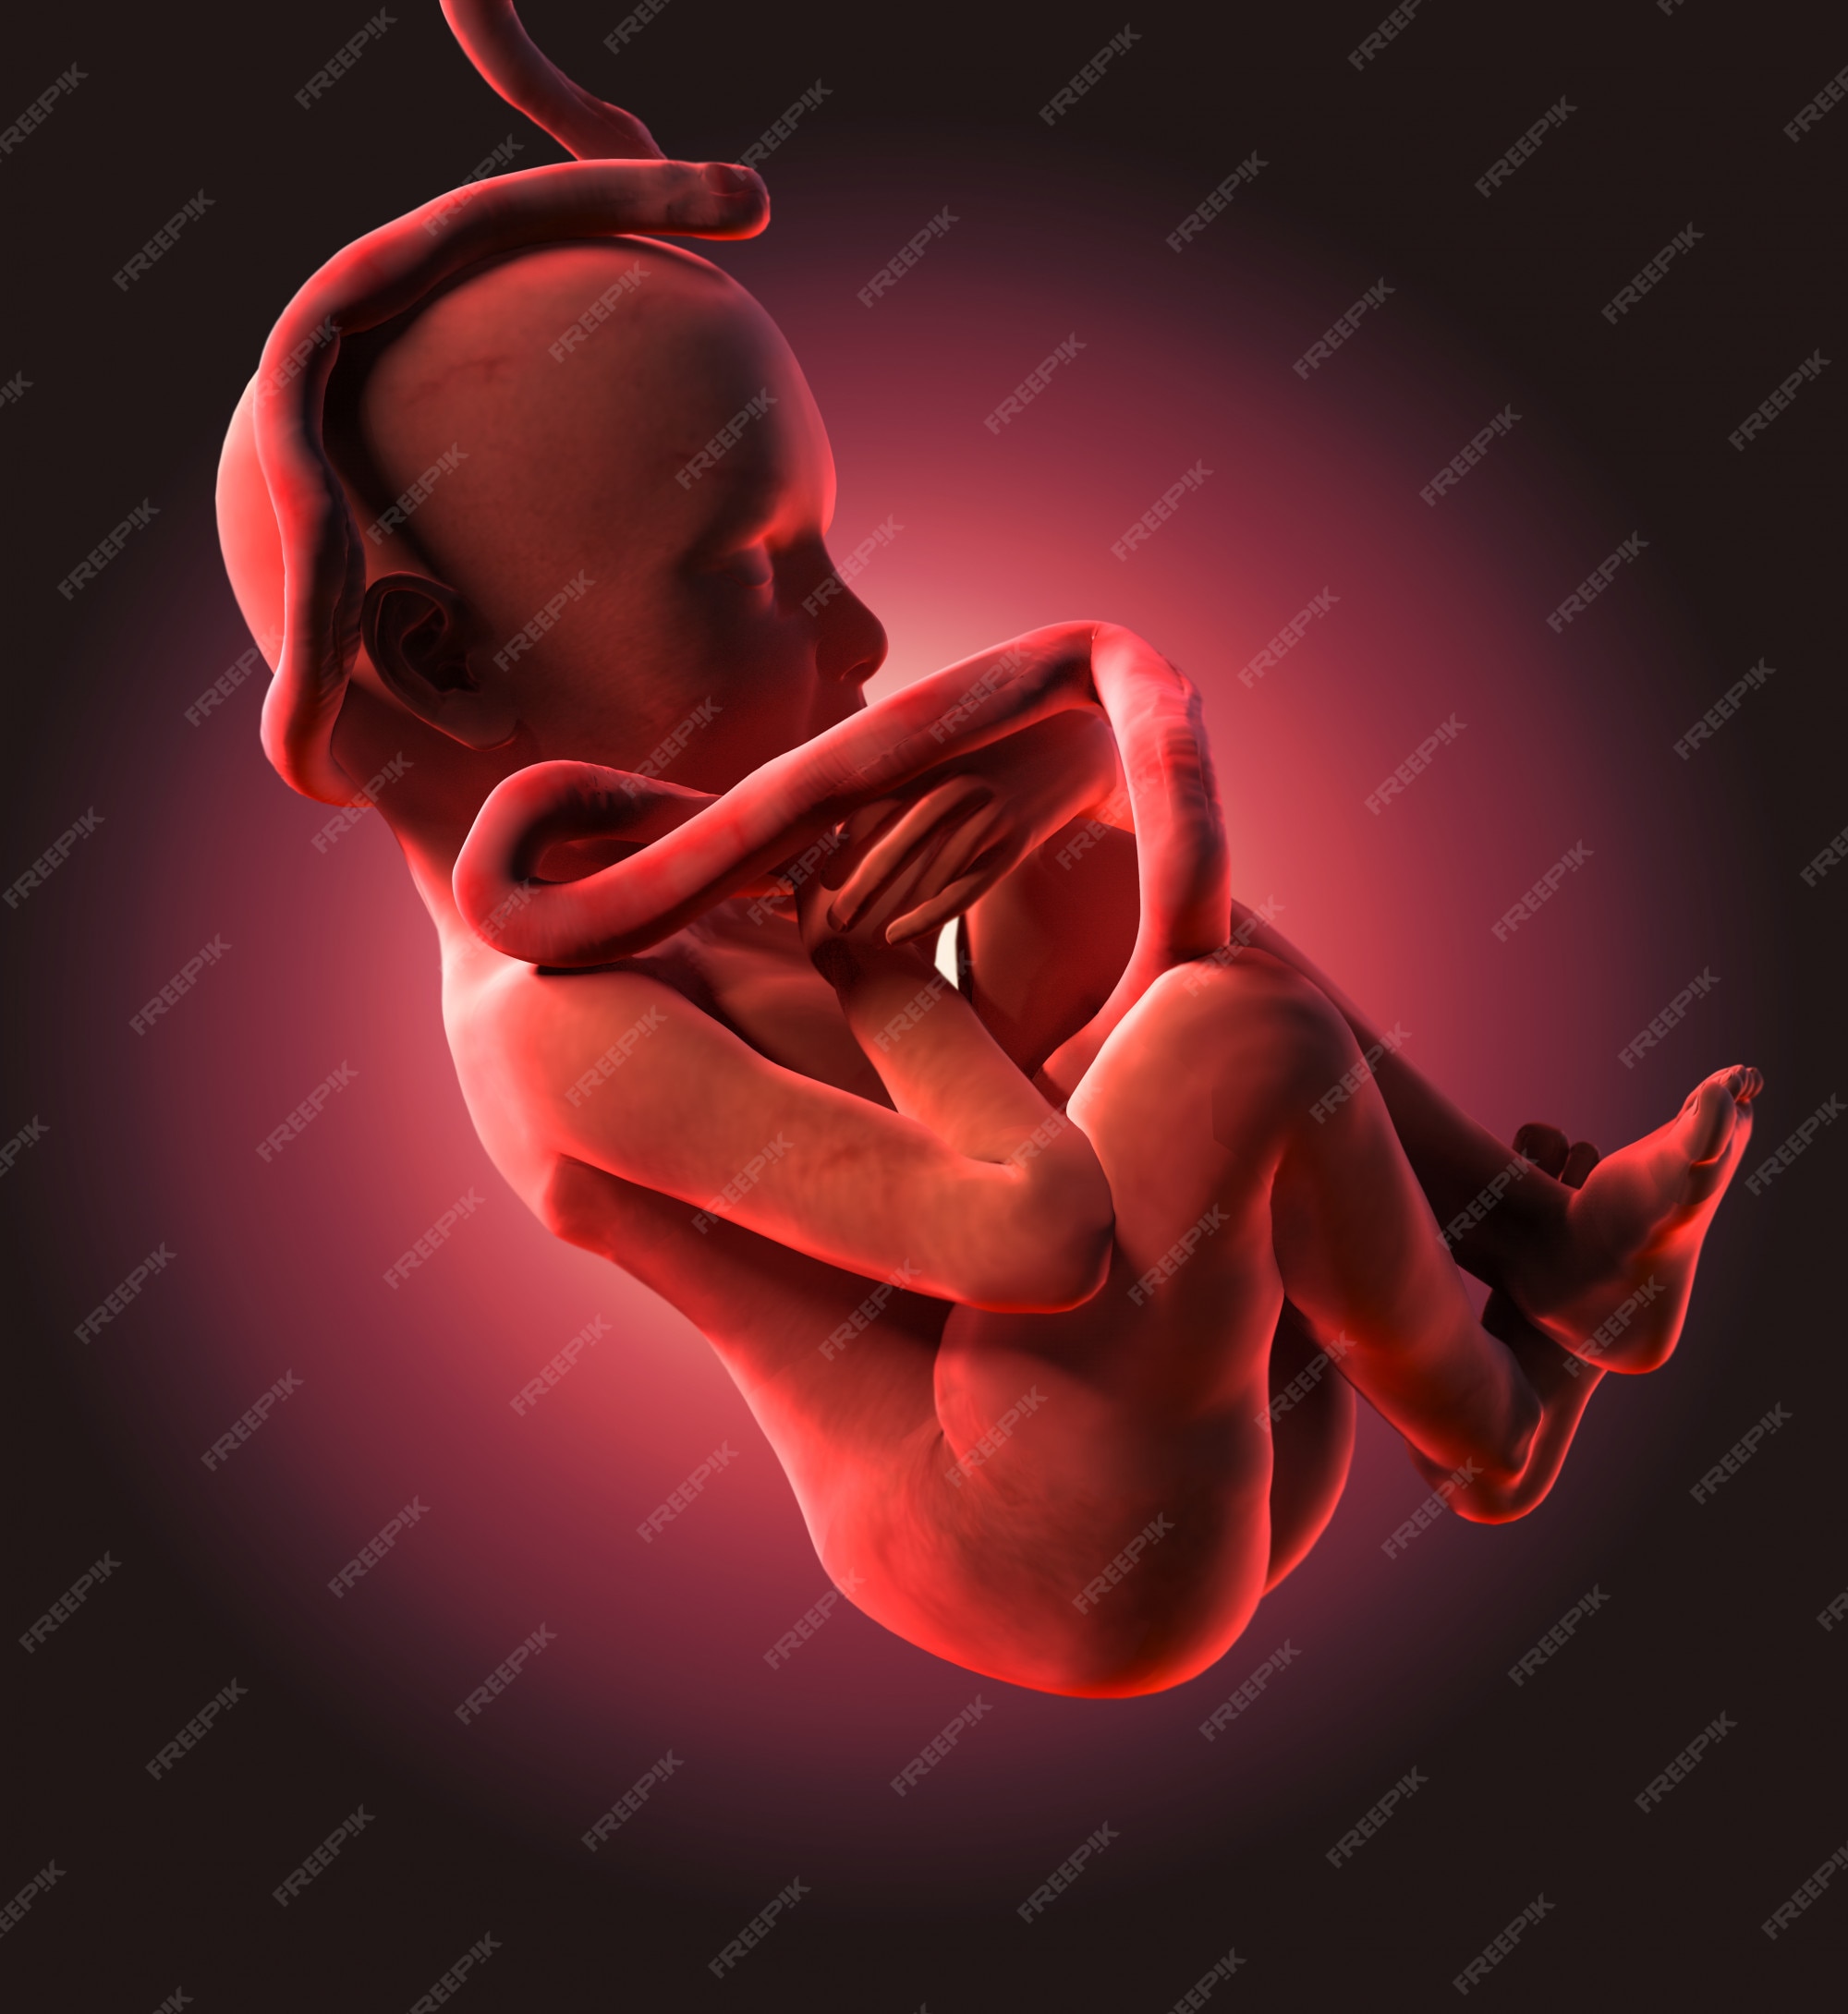 Premium Photo | Human fetus medical concept graphic and scientific